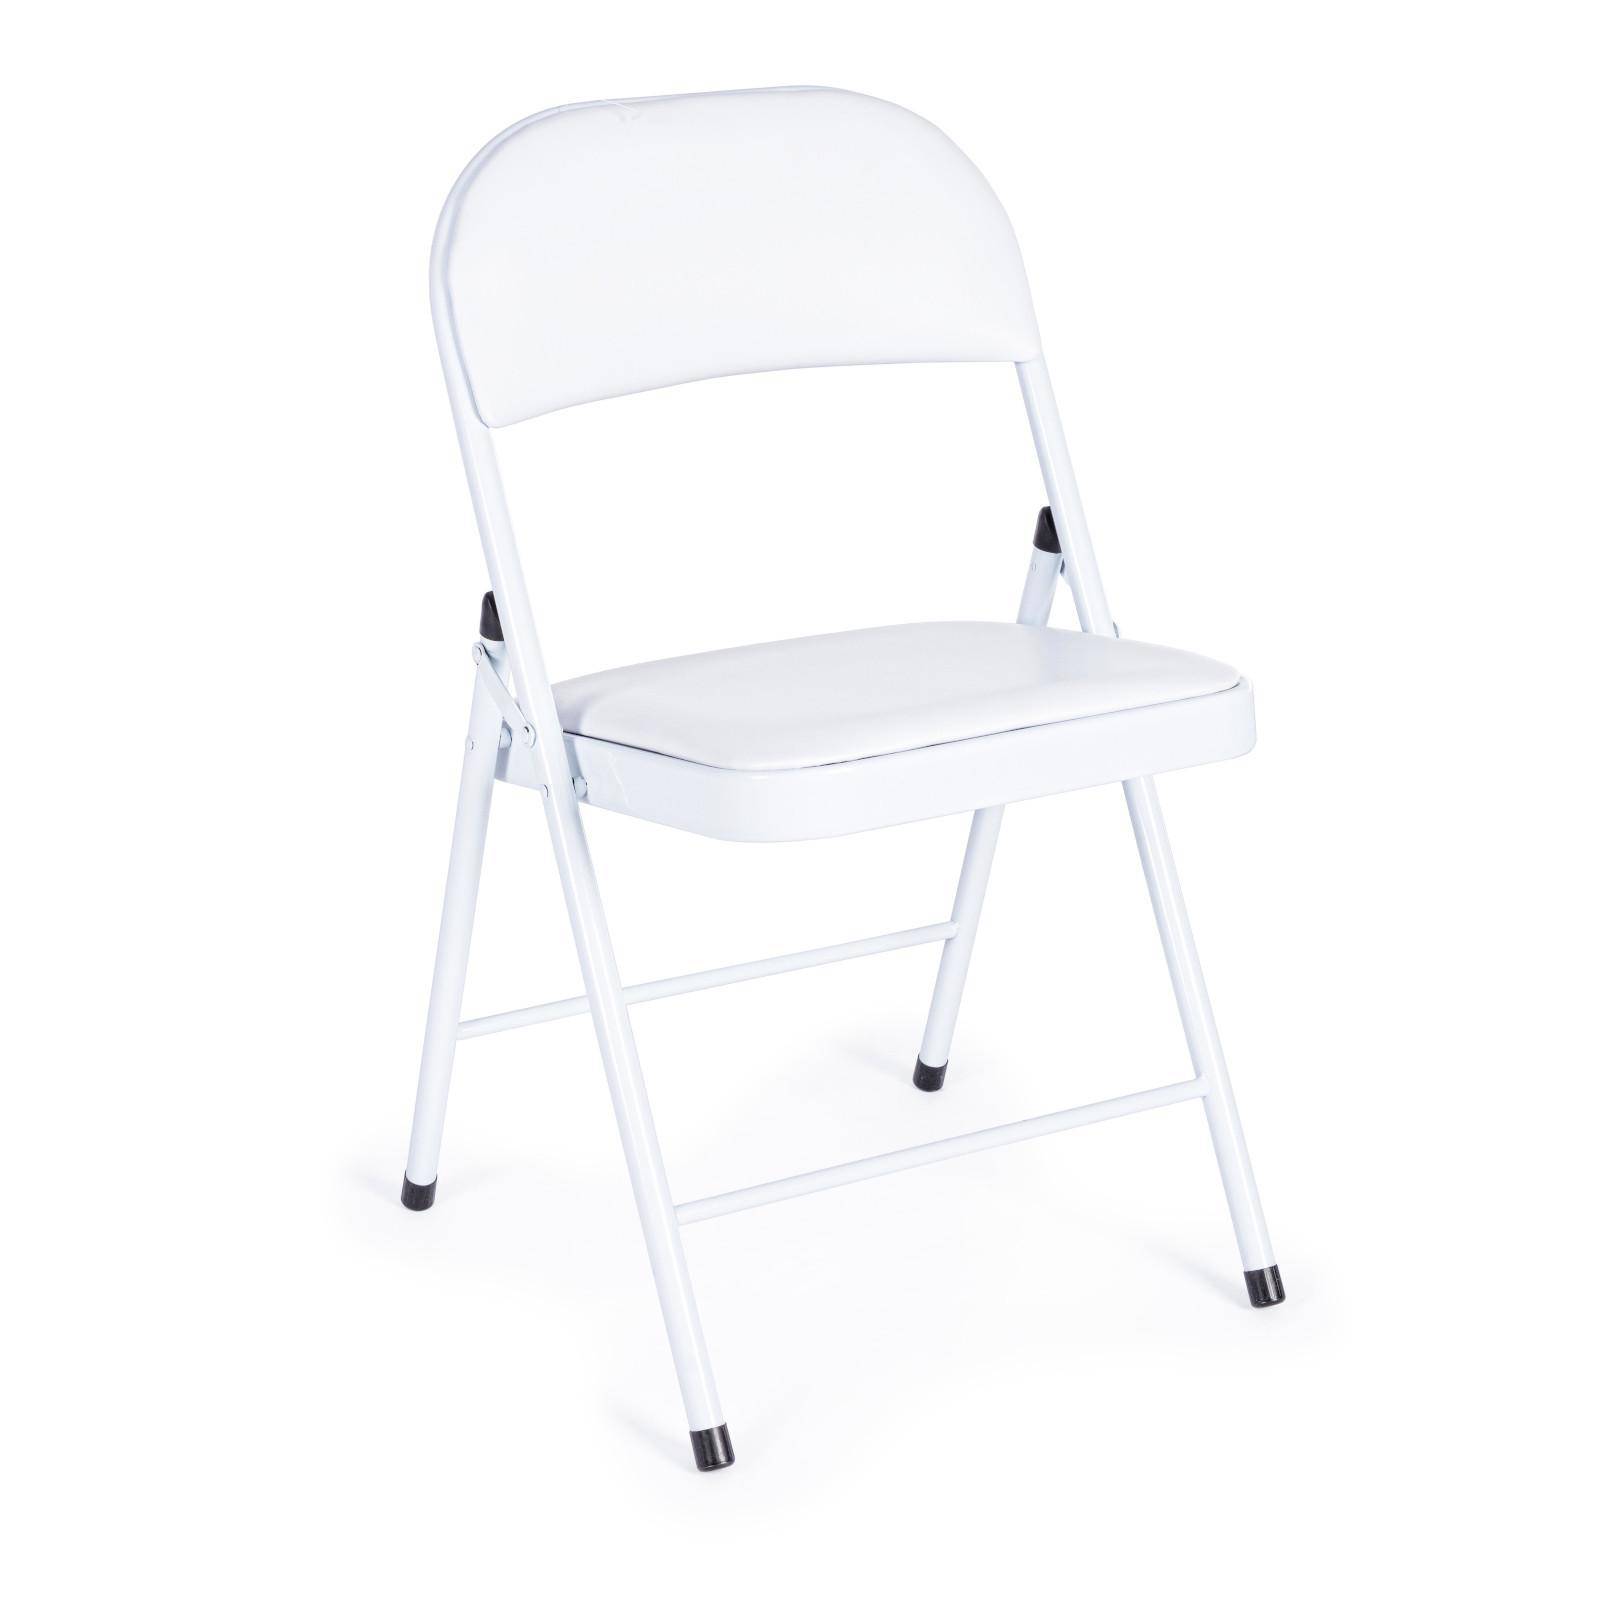 Ipastock - Righe di sedie pieghevoli bianche sul prato